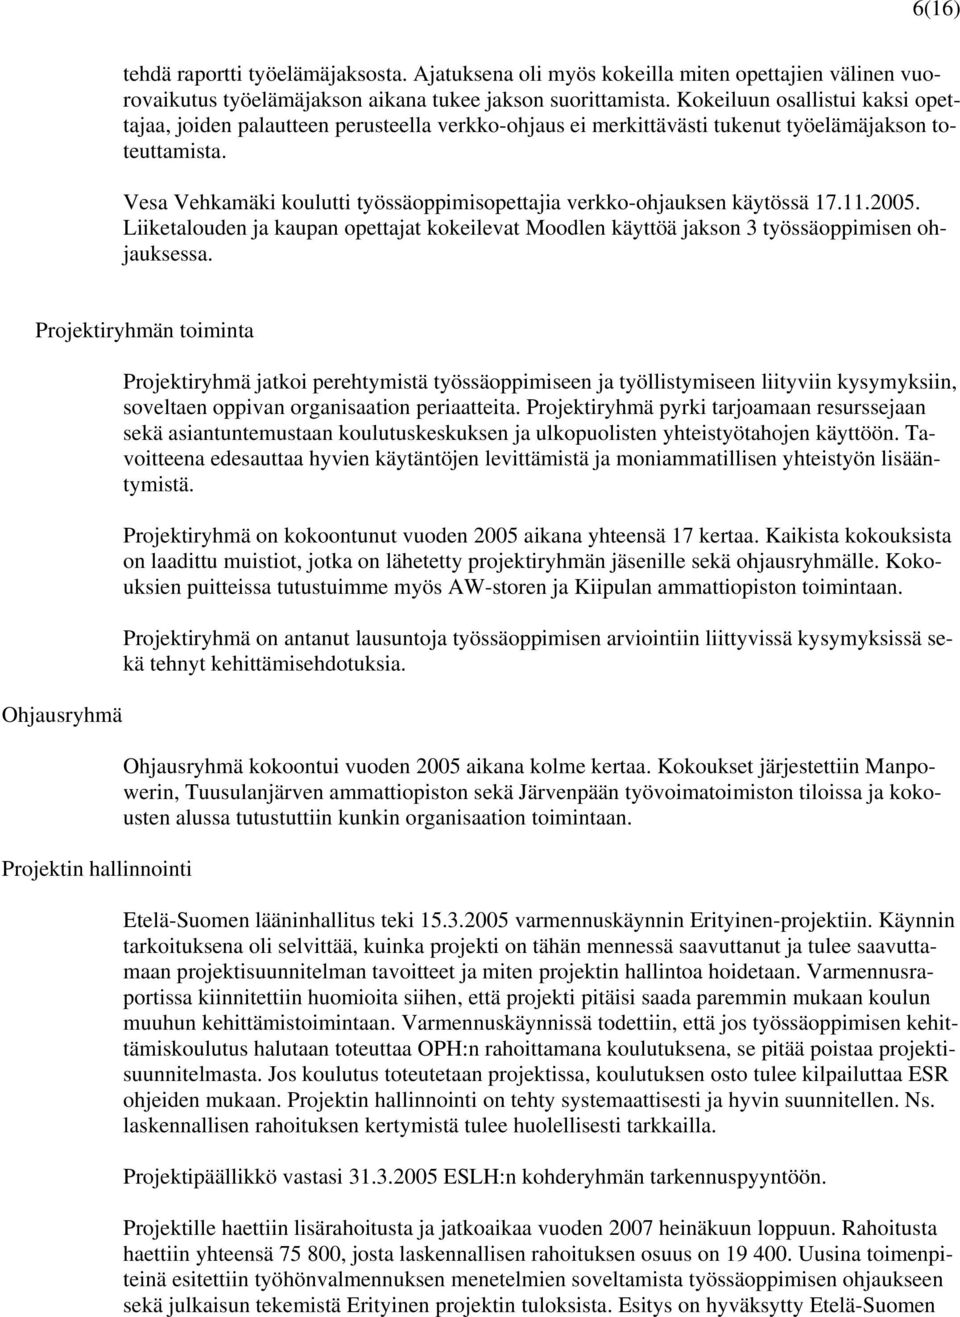 Vesa Vehkamäki koulutti työssäoppimisopettajia verkko-ohjauksen käytössä 17.11.2005. Liiketalouden ja kaupan opettajat kokeilevat Moodlen käyttöä jakson 3 työssäoppimisen ohjauksessa.